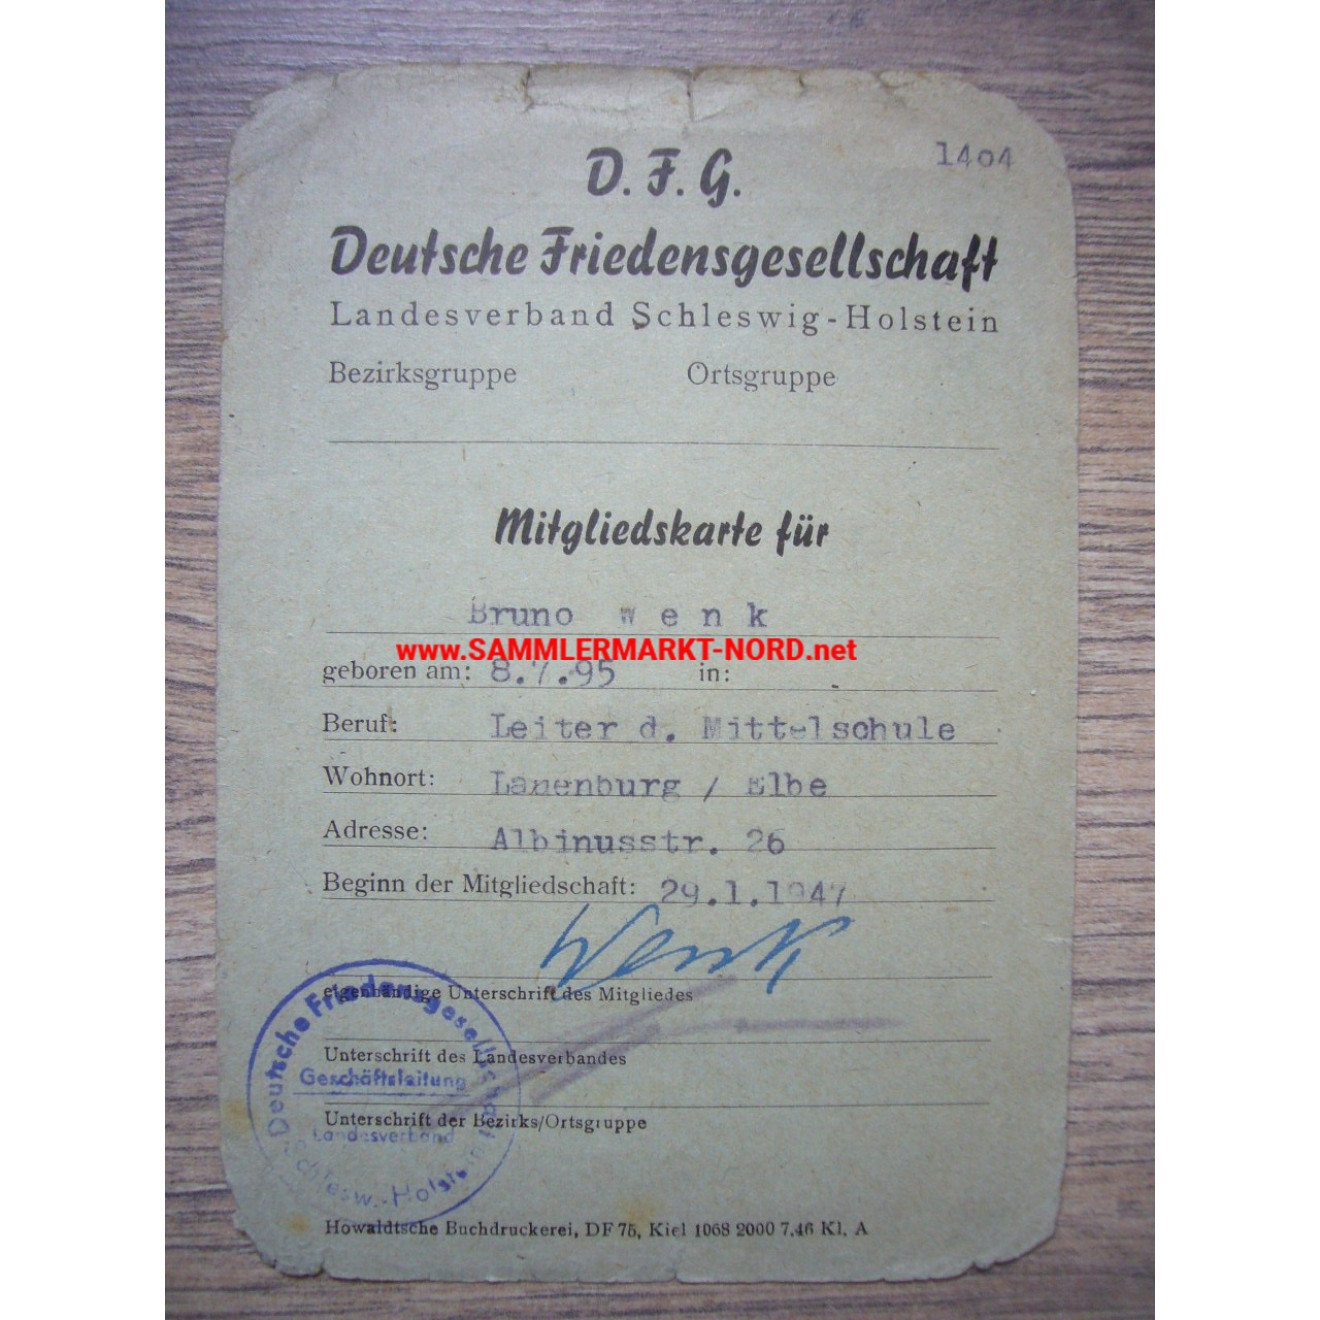 D.F.G. Deutsche Friedensgesellschaft - Mitgliedskarte